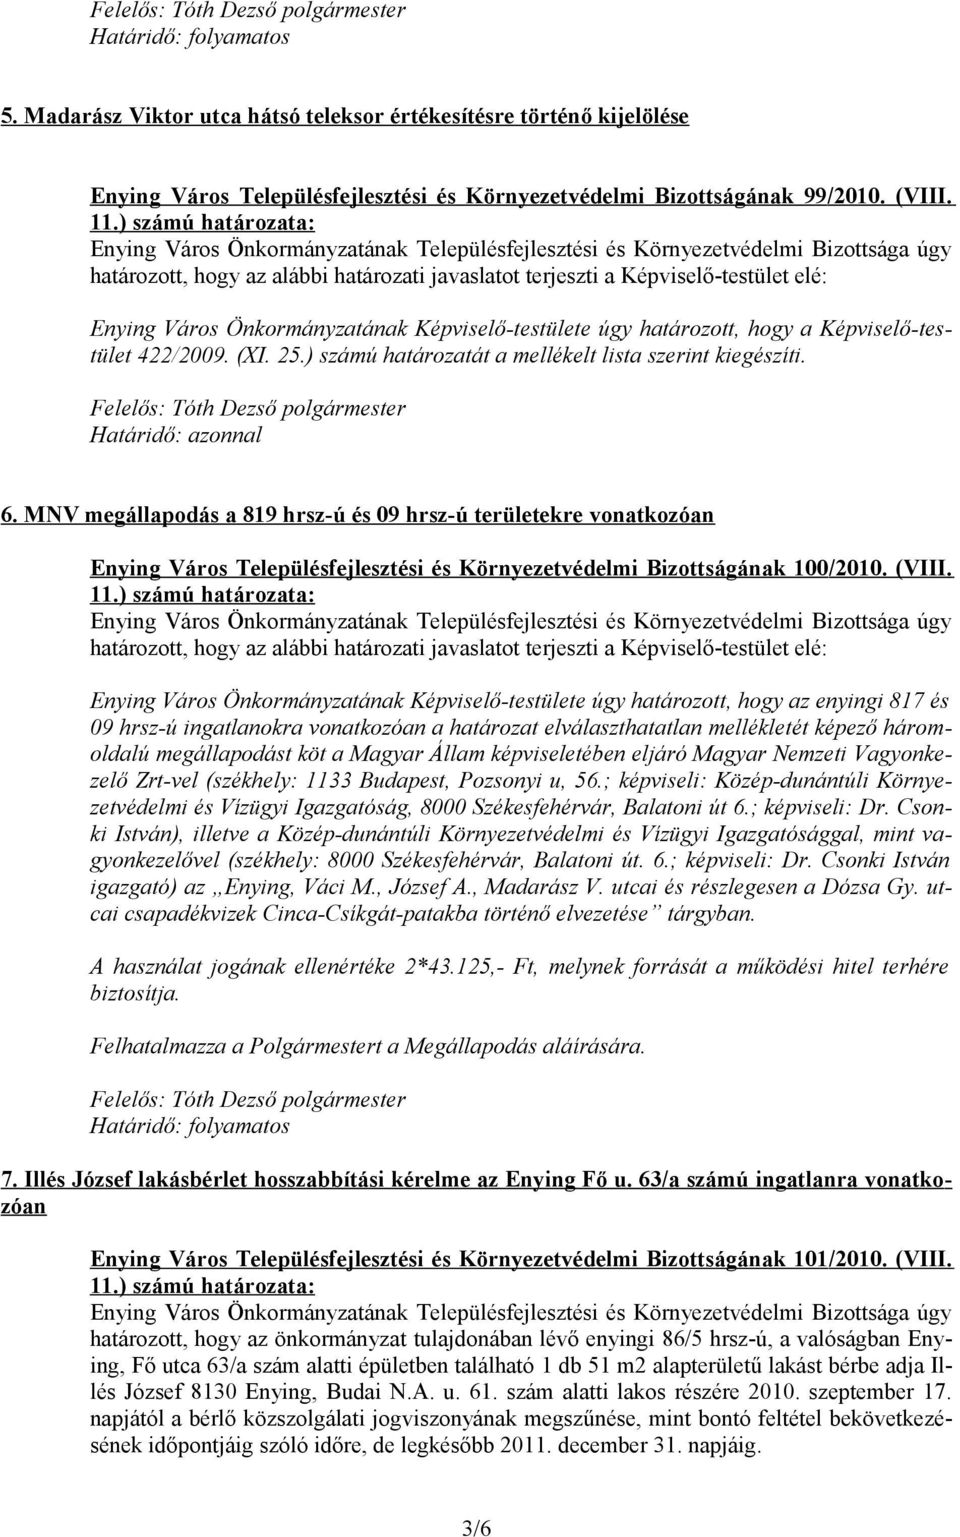 MNV megállapodás a 819 hrsz-ú és 09 hrsz-ú területekre vonatkozóan Enying Város Településfejlesztési és Környezetvédelmi Bizottságának 100/2010. (VIII.